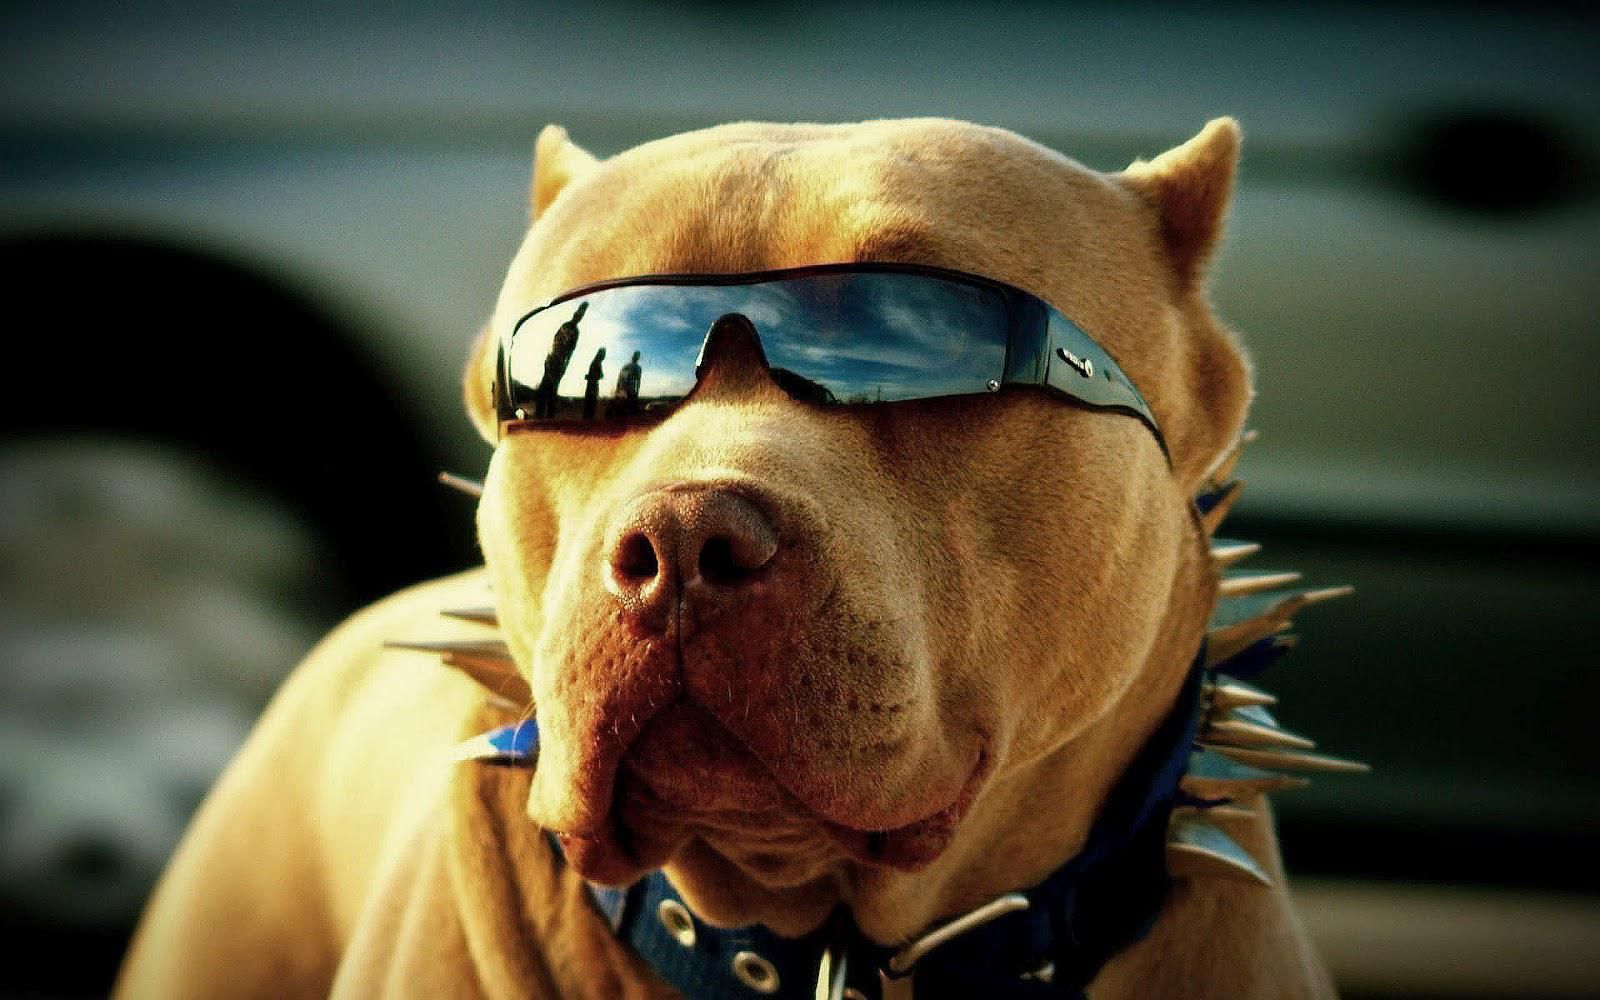 Bạn đã bao giờ thấy một chú chó đeo kính râm đến ngầu như thế này chưa? Những bức ảnh về chú chó này sẽ khiến bạn yêu mến con vật cute và hài hước này ngay lập tức. Đừng chần chừ mà hãy chiêm ngưỡng những bức ảnh độc đáo này ngay bây giờ!